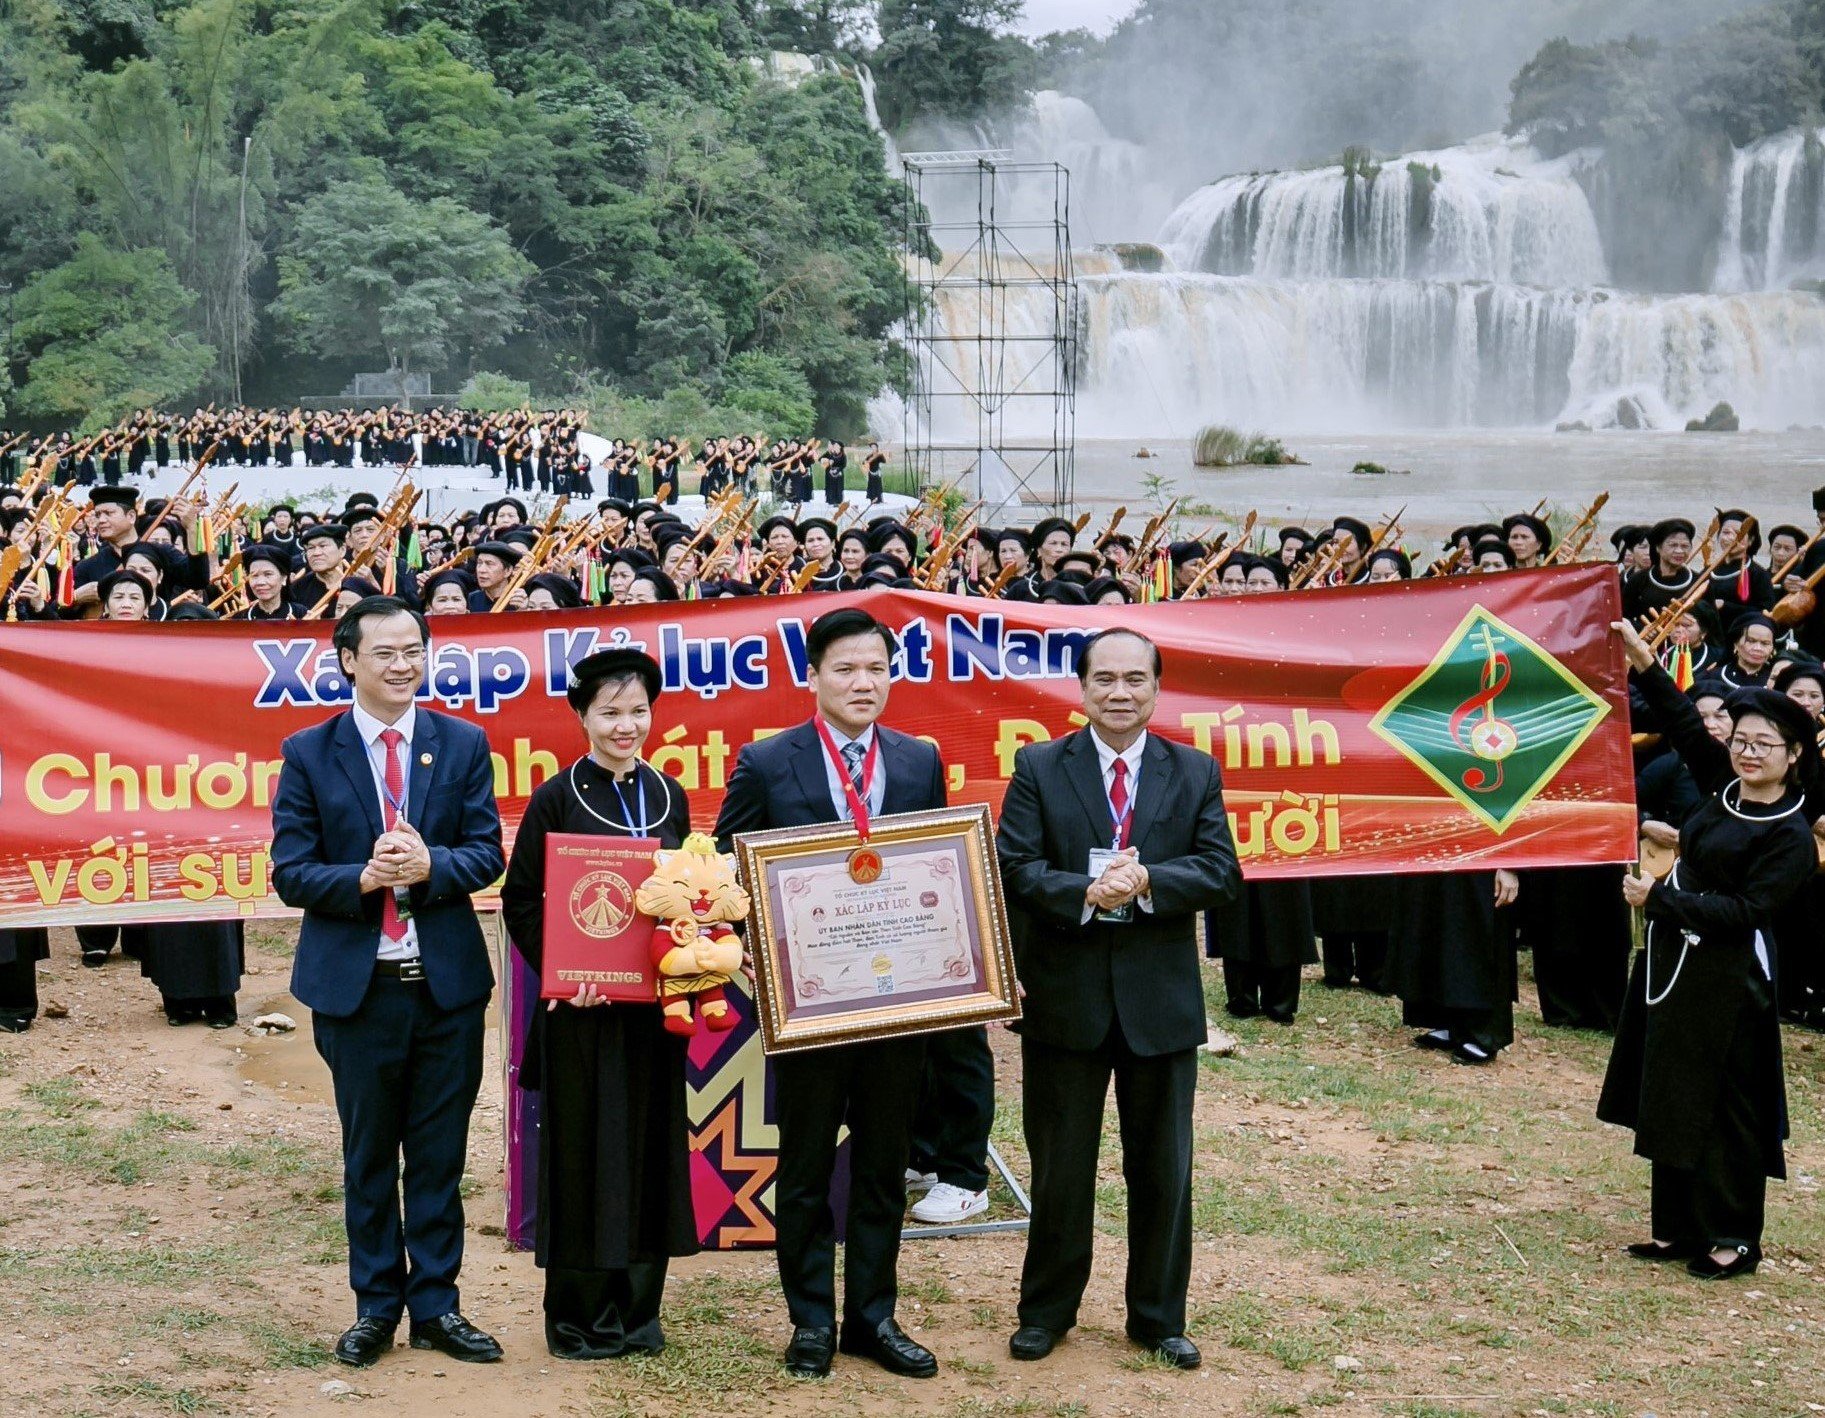 Tổ chức Kỷ lục Việt Nam trao Bằng chứng nhận và Kỷ niệm chương Xác lập kỷ lục màn đồng diễn hát Then, đàn Tính có số lượng người tham gia đông nhất Việt Nam cho UBND tỉnh Cao Bằng.